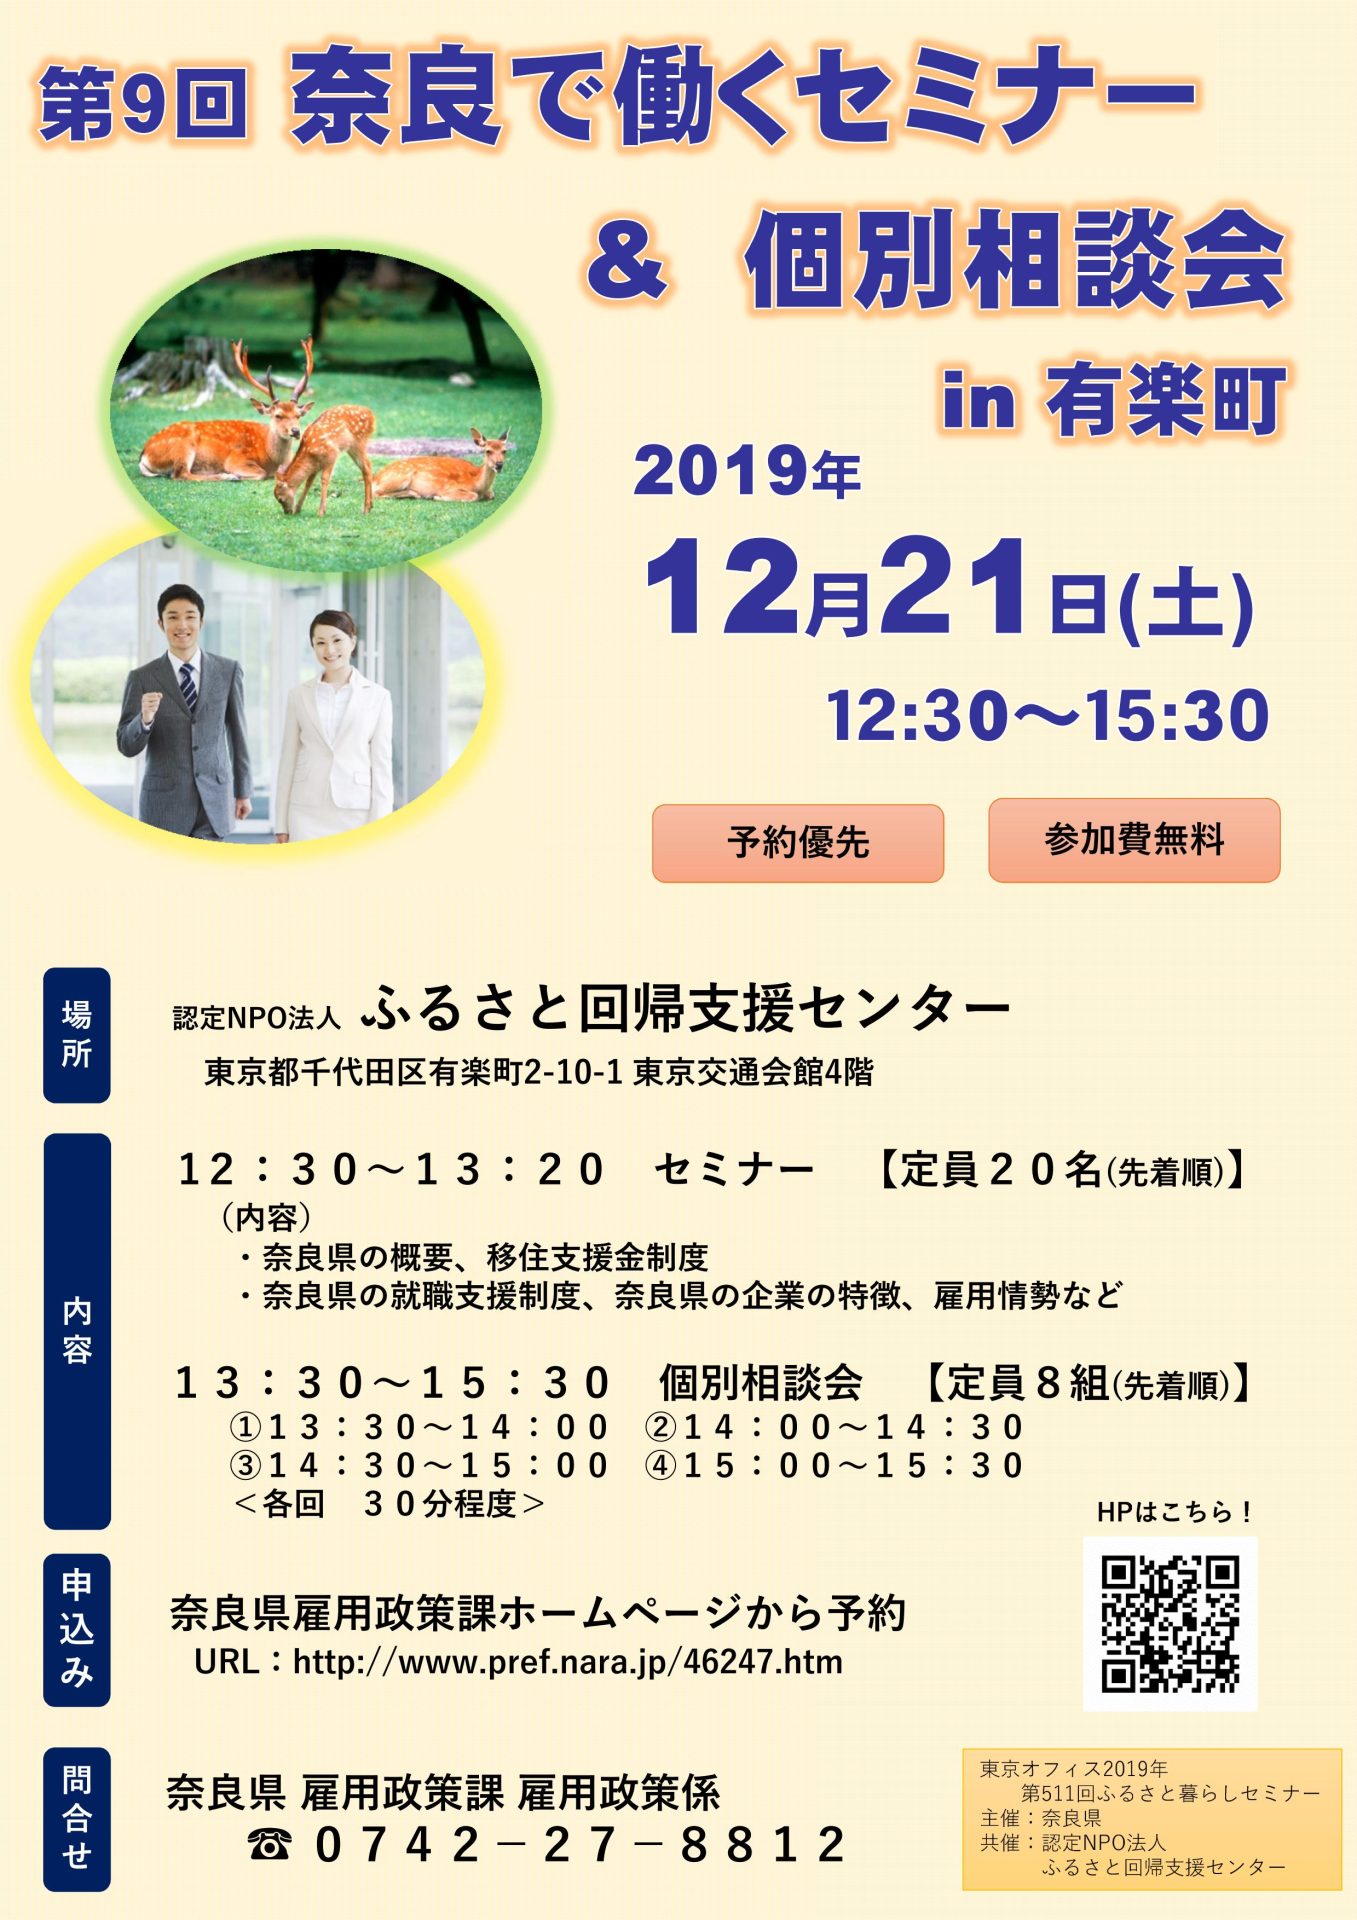 第9回 奈良で働くセミナー & 個別相談会 in 有楽町 | 移住関連イベント情報